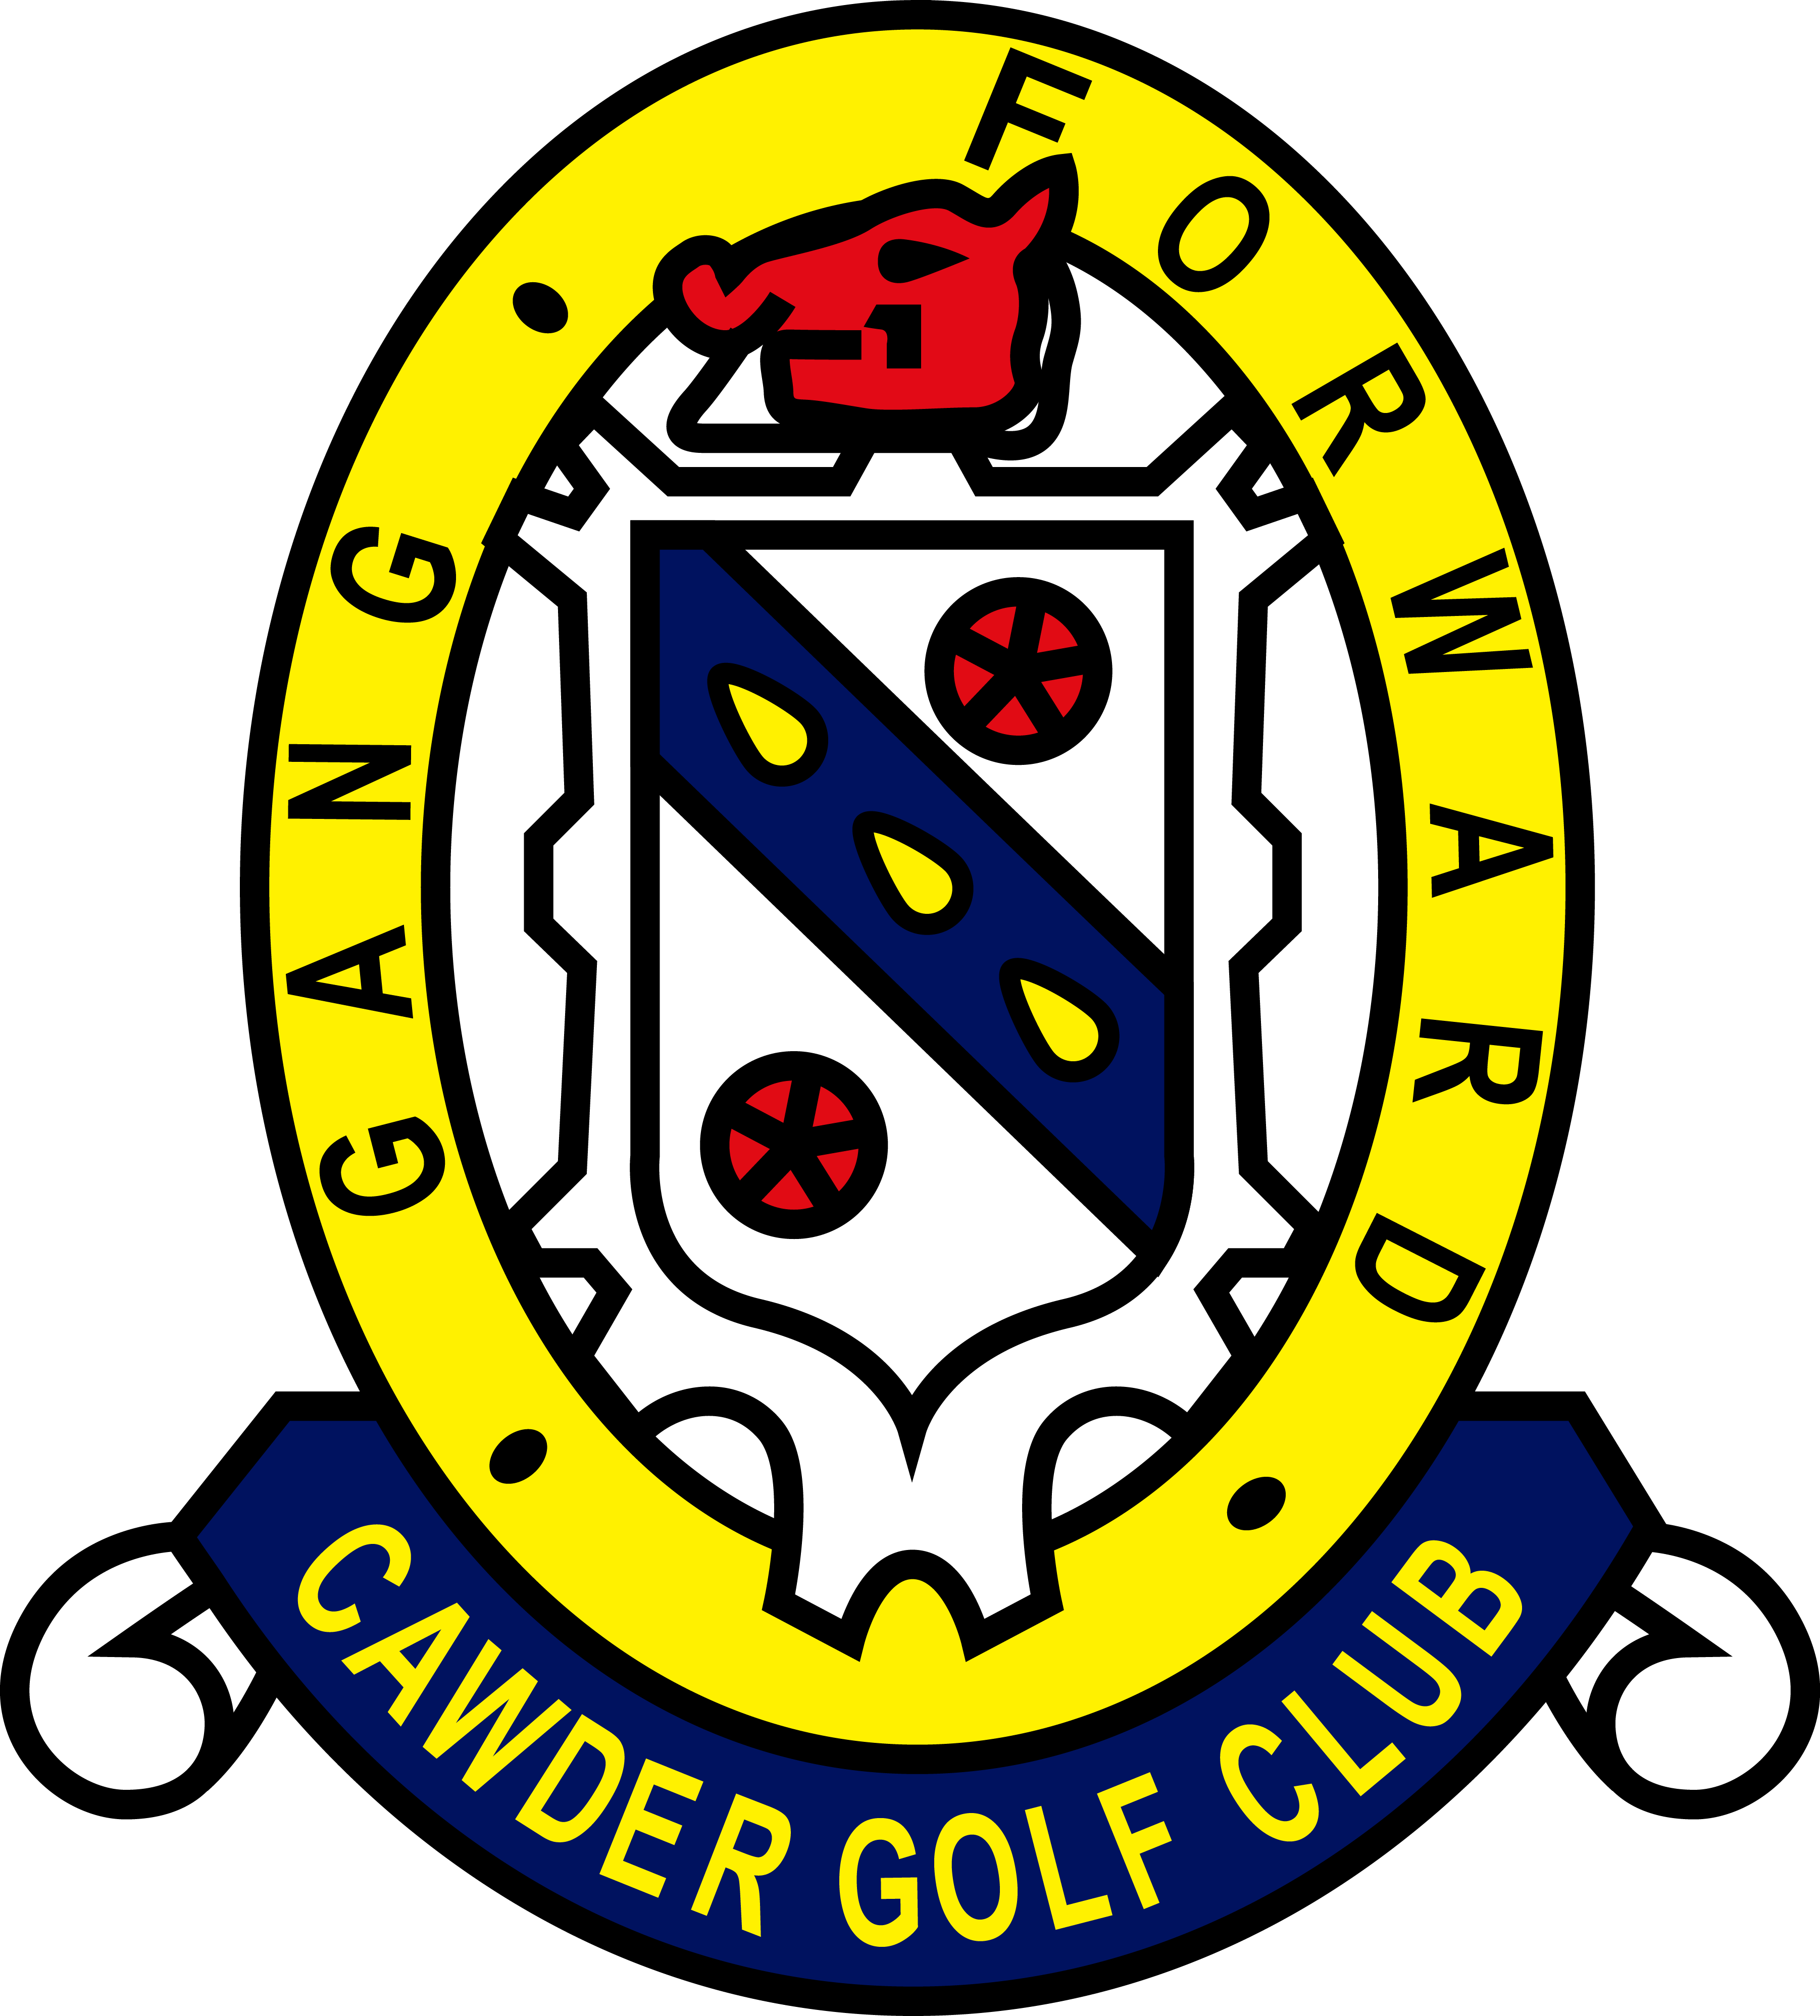 Cawder_Golf_Club - Copy (004)